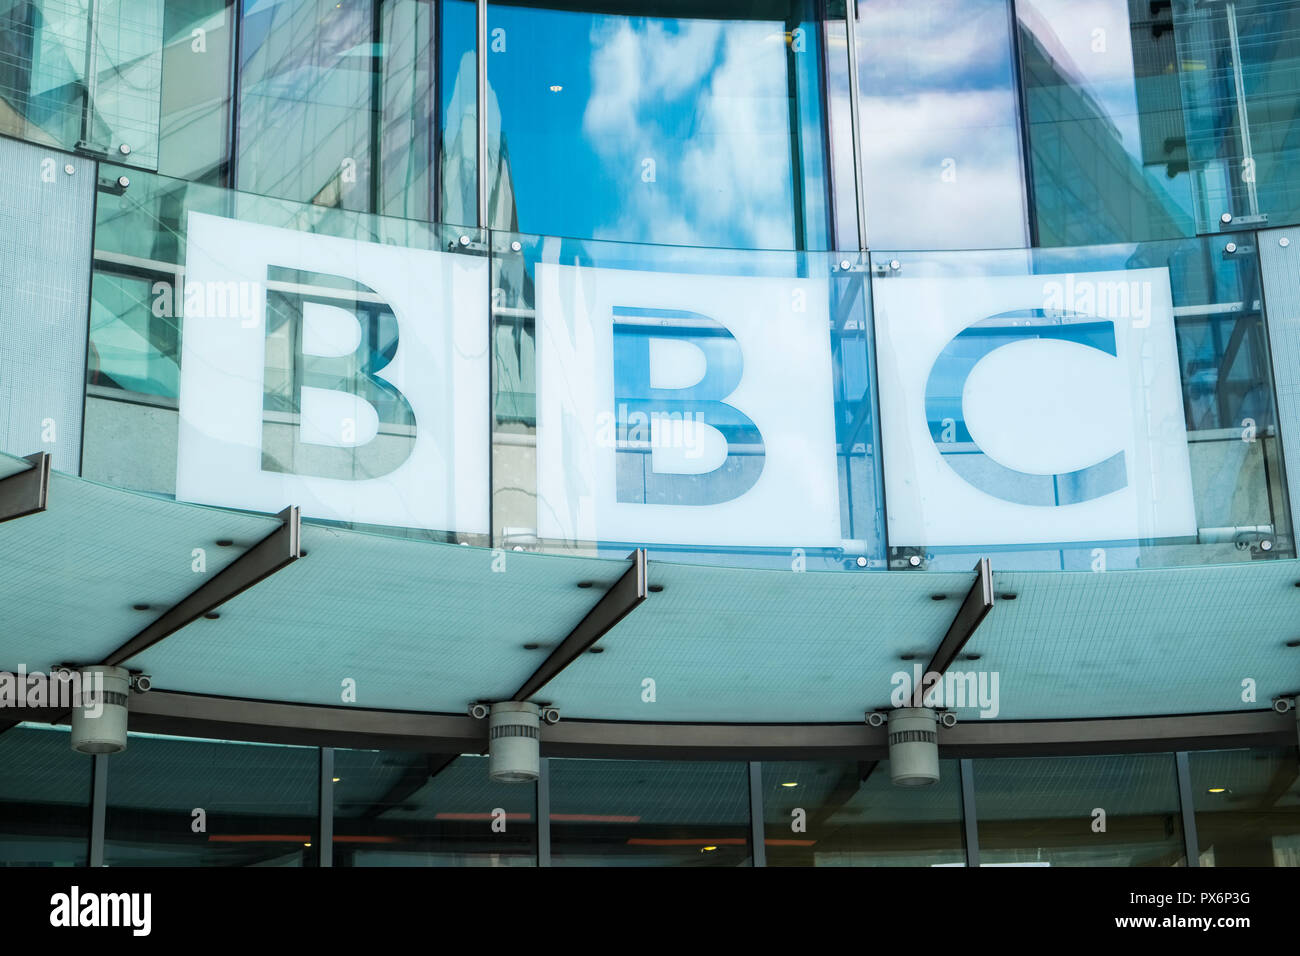 BBC sign, New Broadcasting House, London, England, UK Stock Photo